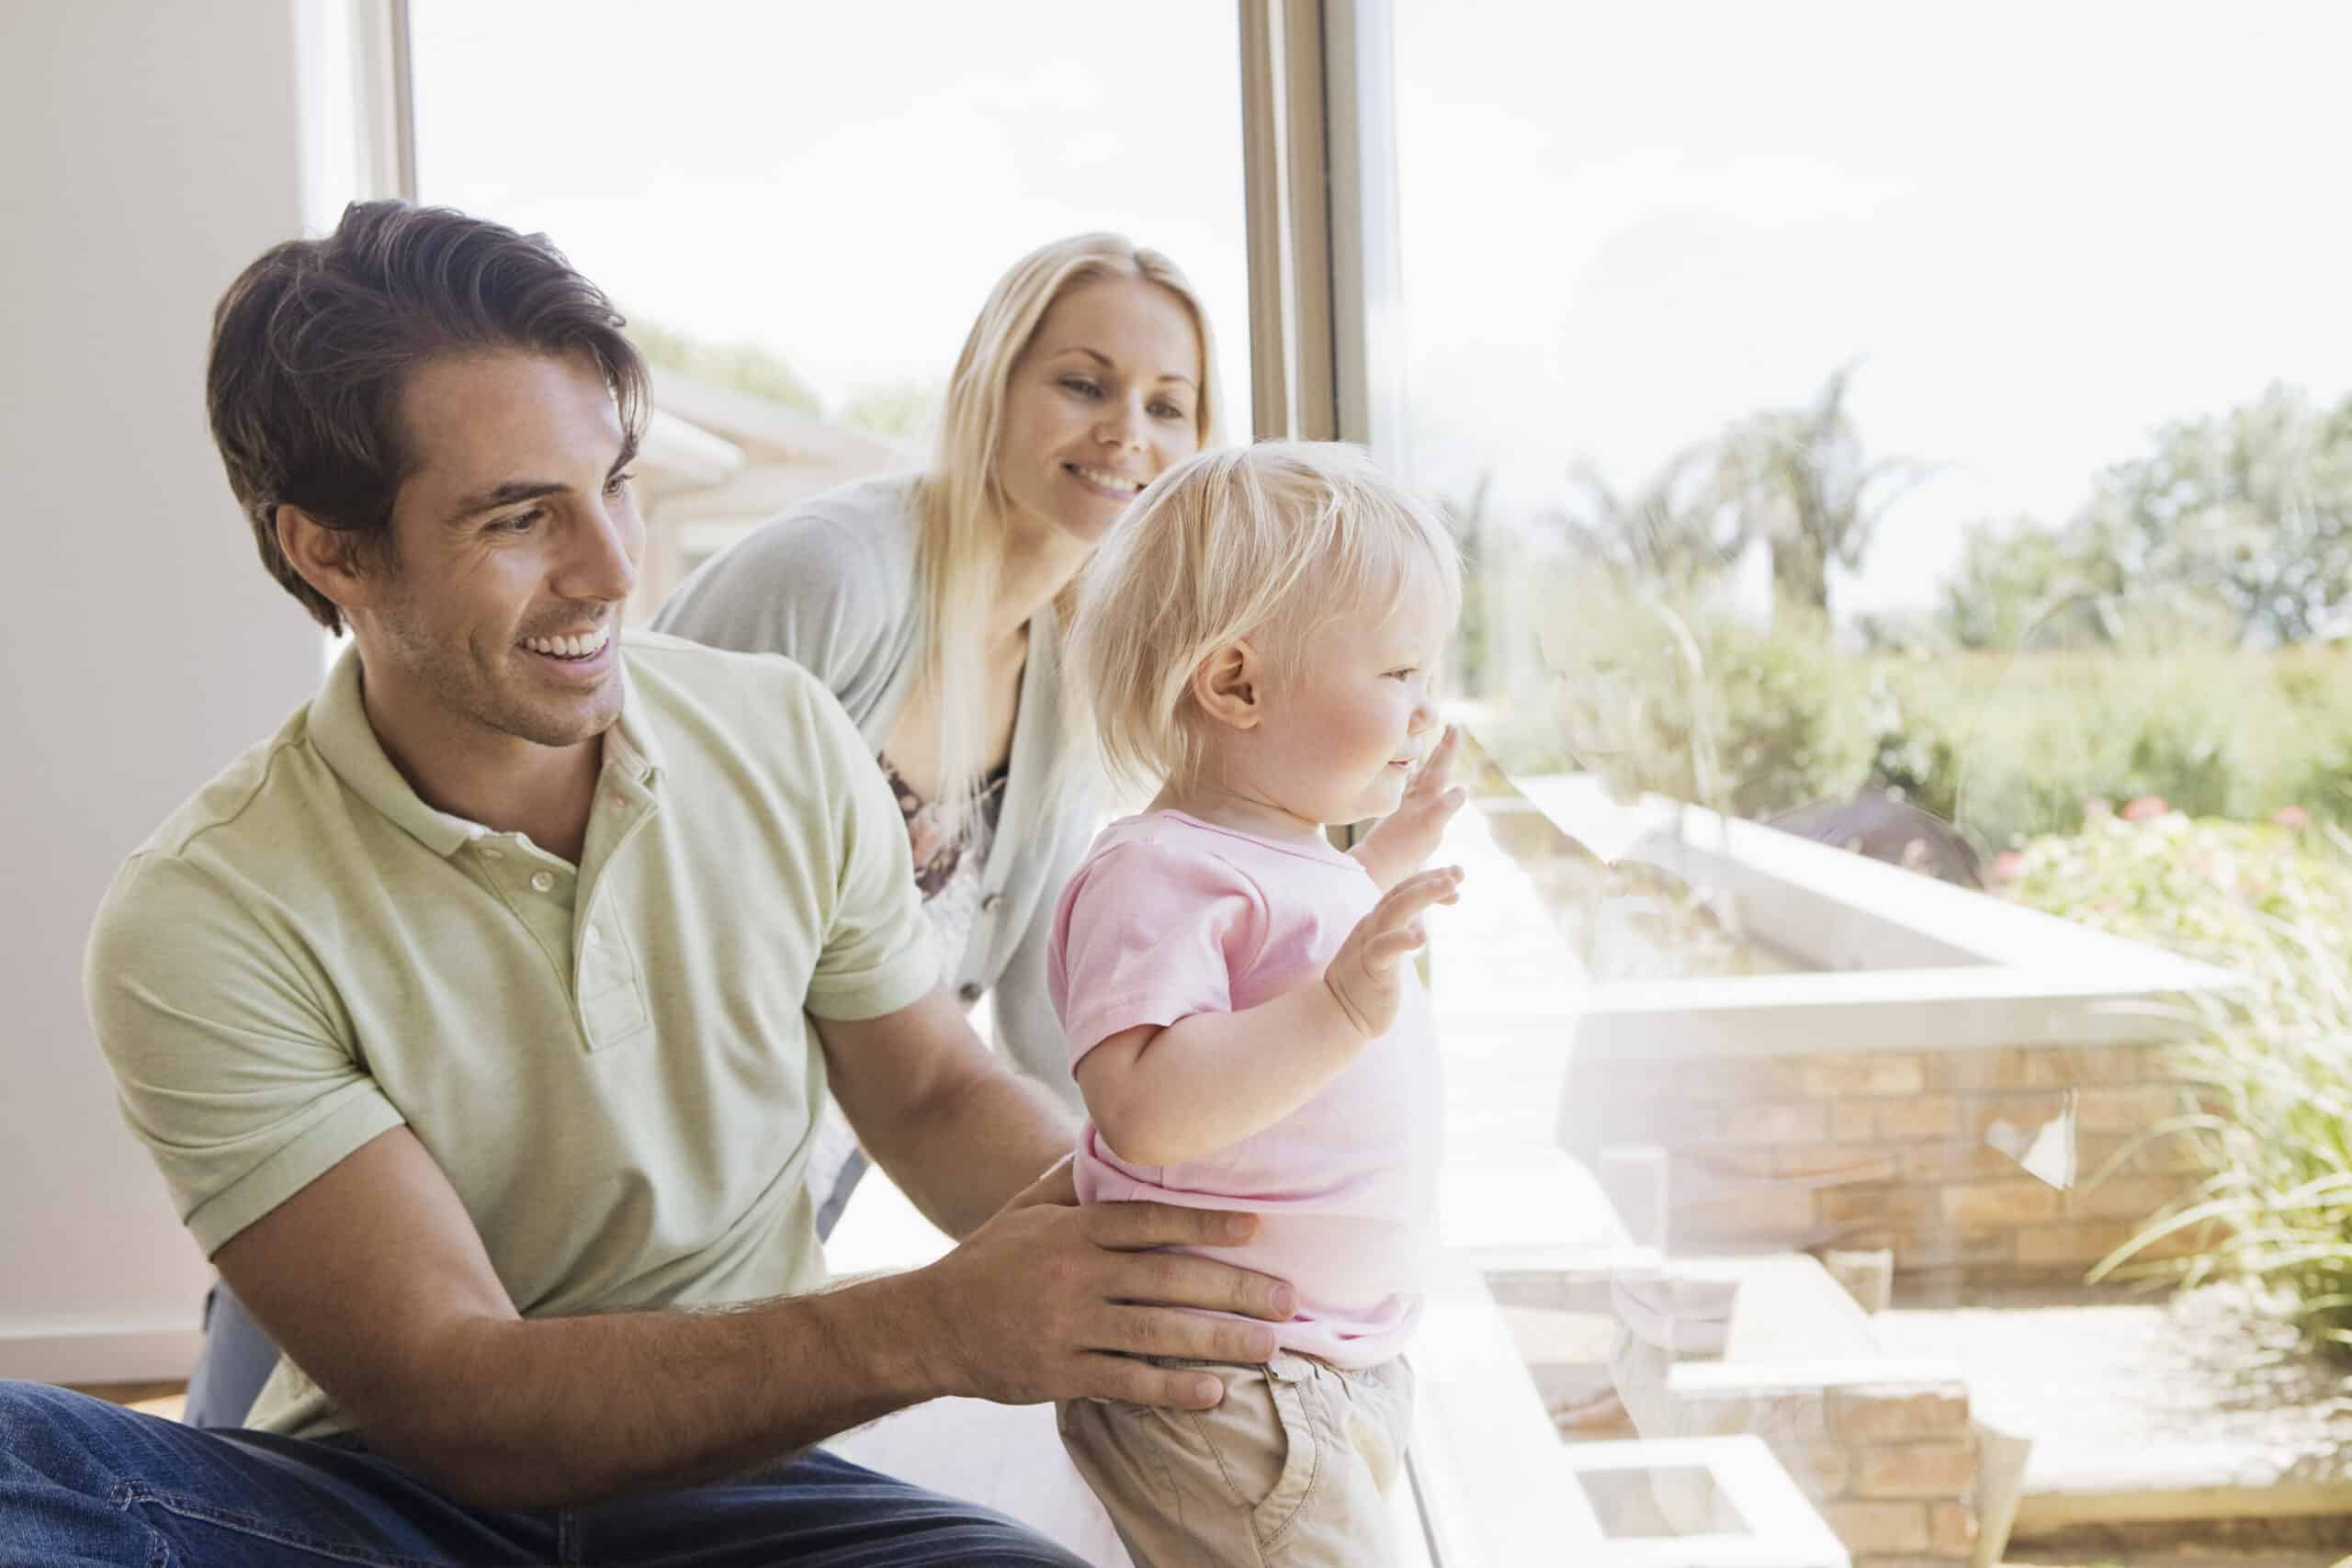 Eine glückliche Familie in einem hellen Raum: Ein Mann und eine Frau lächeln ein Kleinkind an, das dasteht und wegschaut. Die drei stehen vor einem großen Fenster, durch das das Sonnenlicht hereinströmt. © Fotografie Tomas Rodriguez